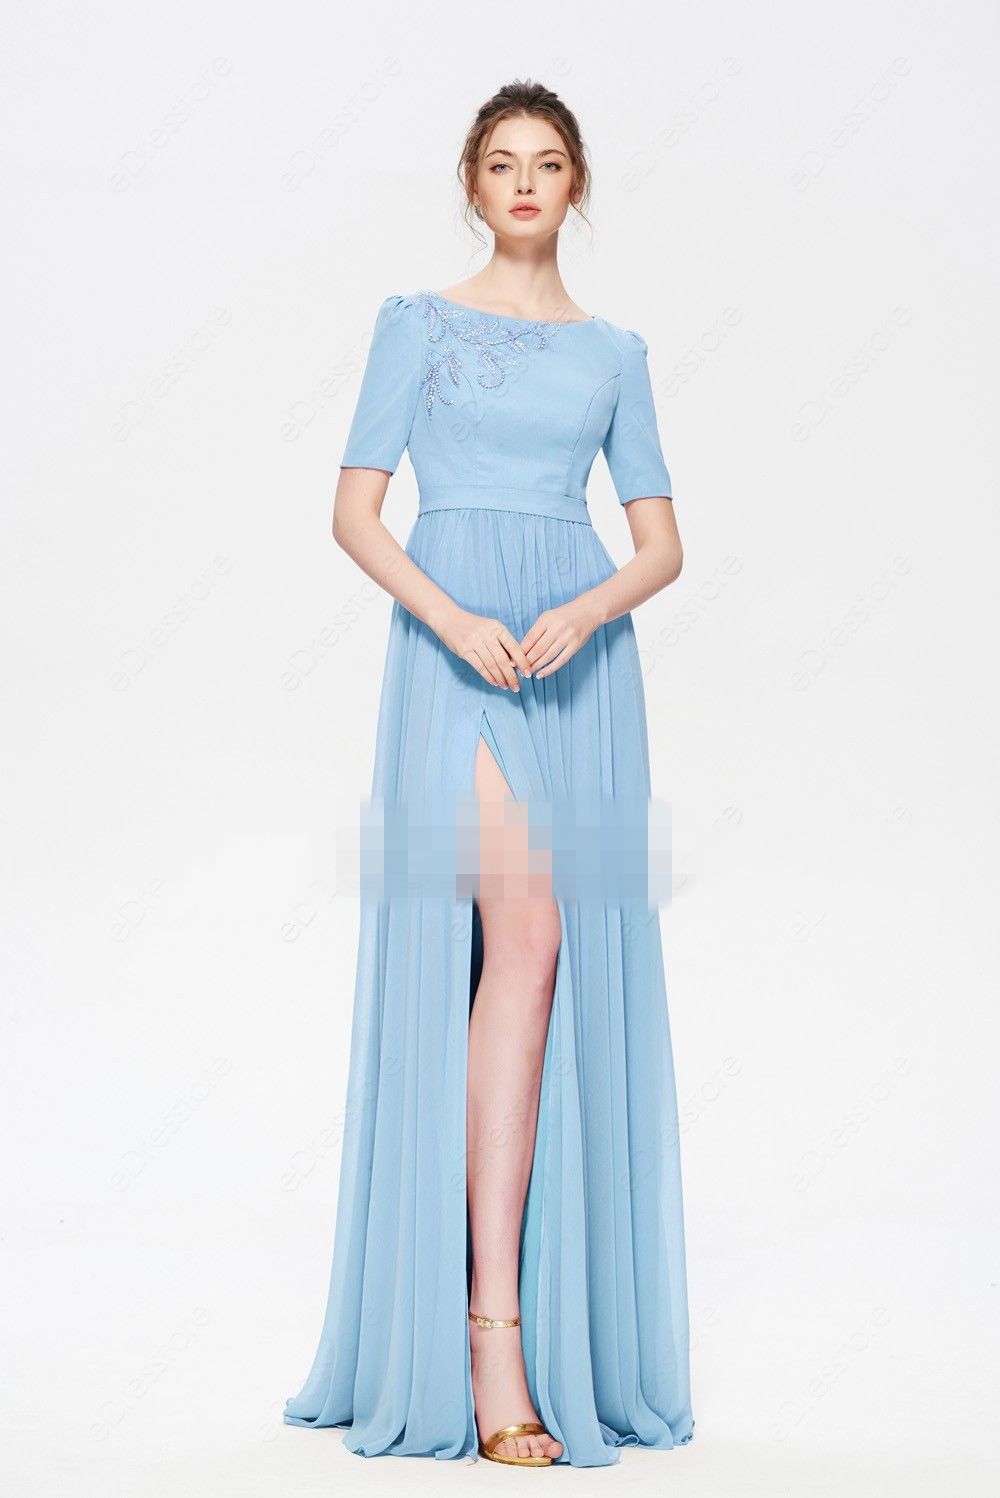 modest light blue dress